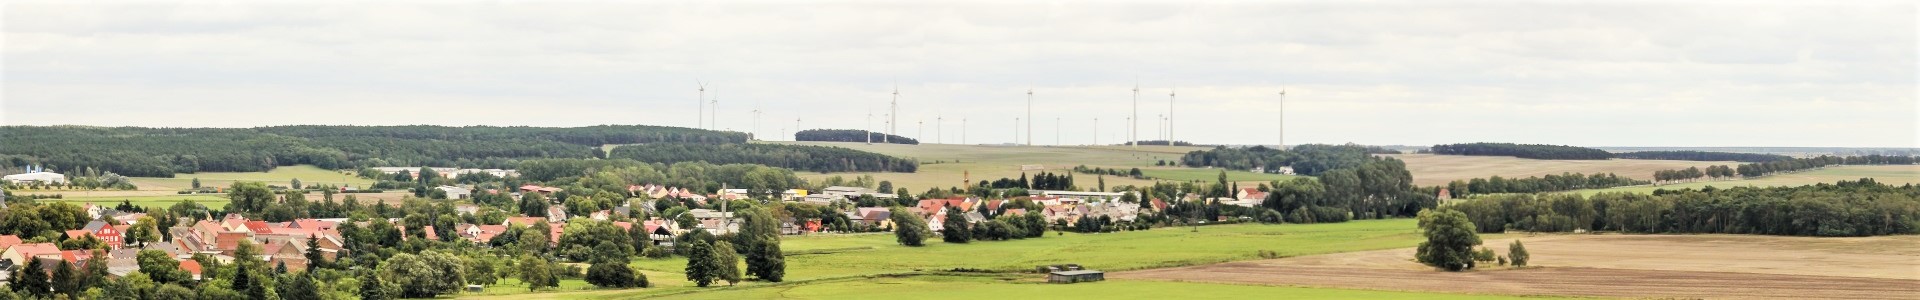 Verfahrensgegenständliche Unterlagen zum Regionalplan Havelland-Fläming 3.0 Hintergrundbild